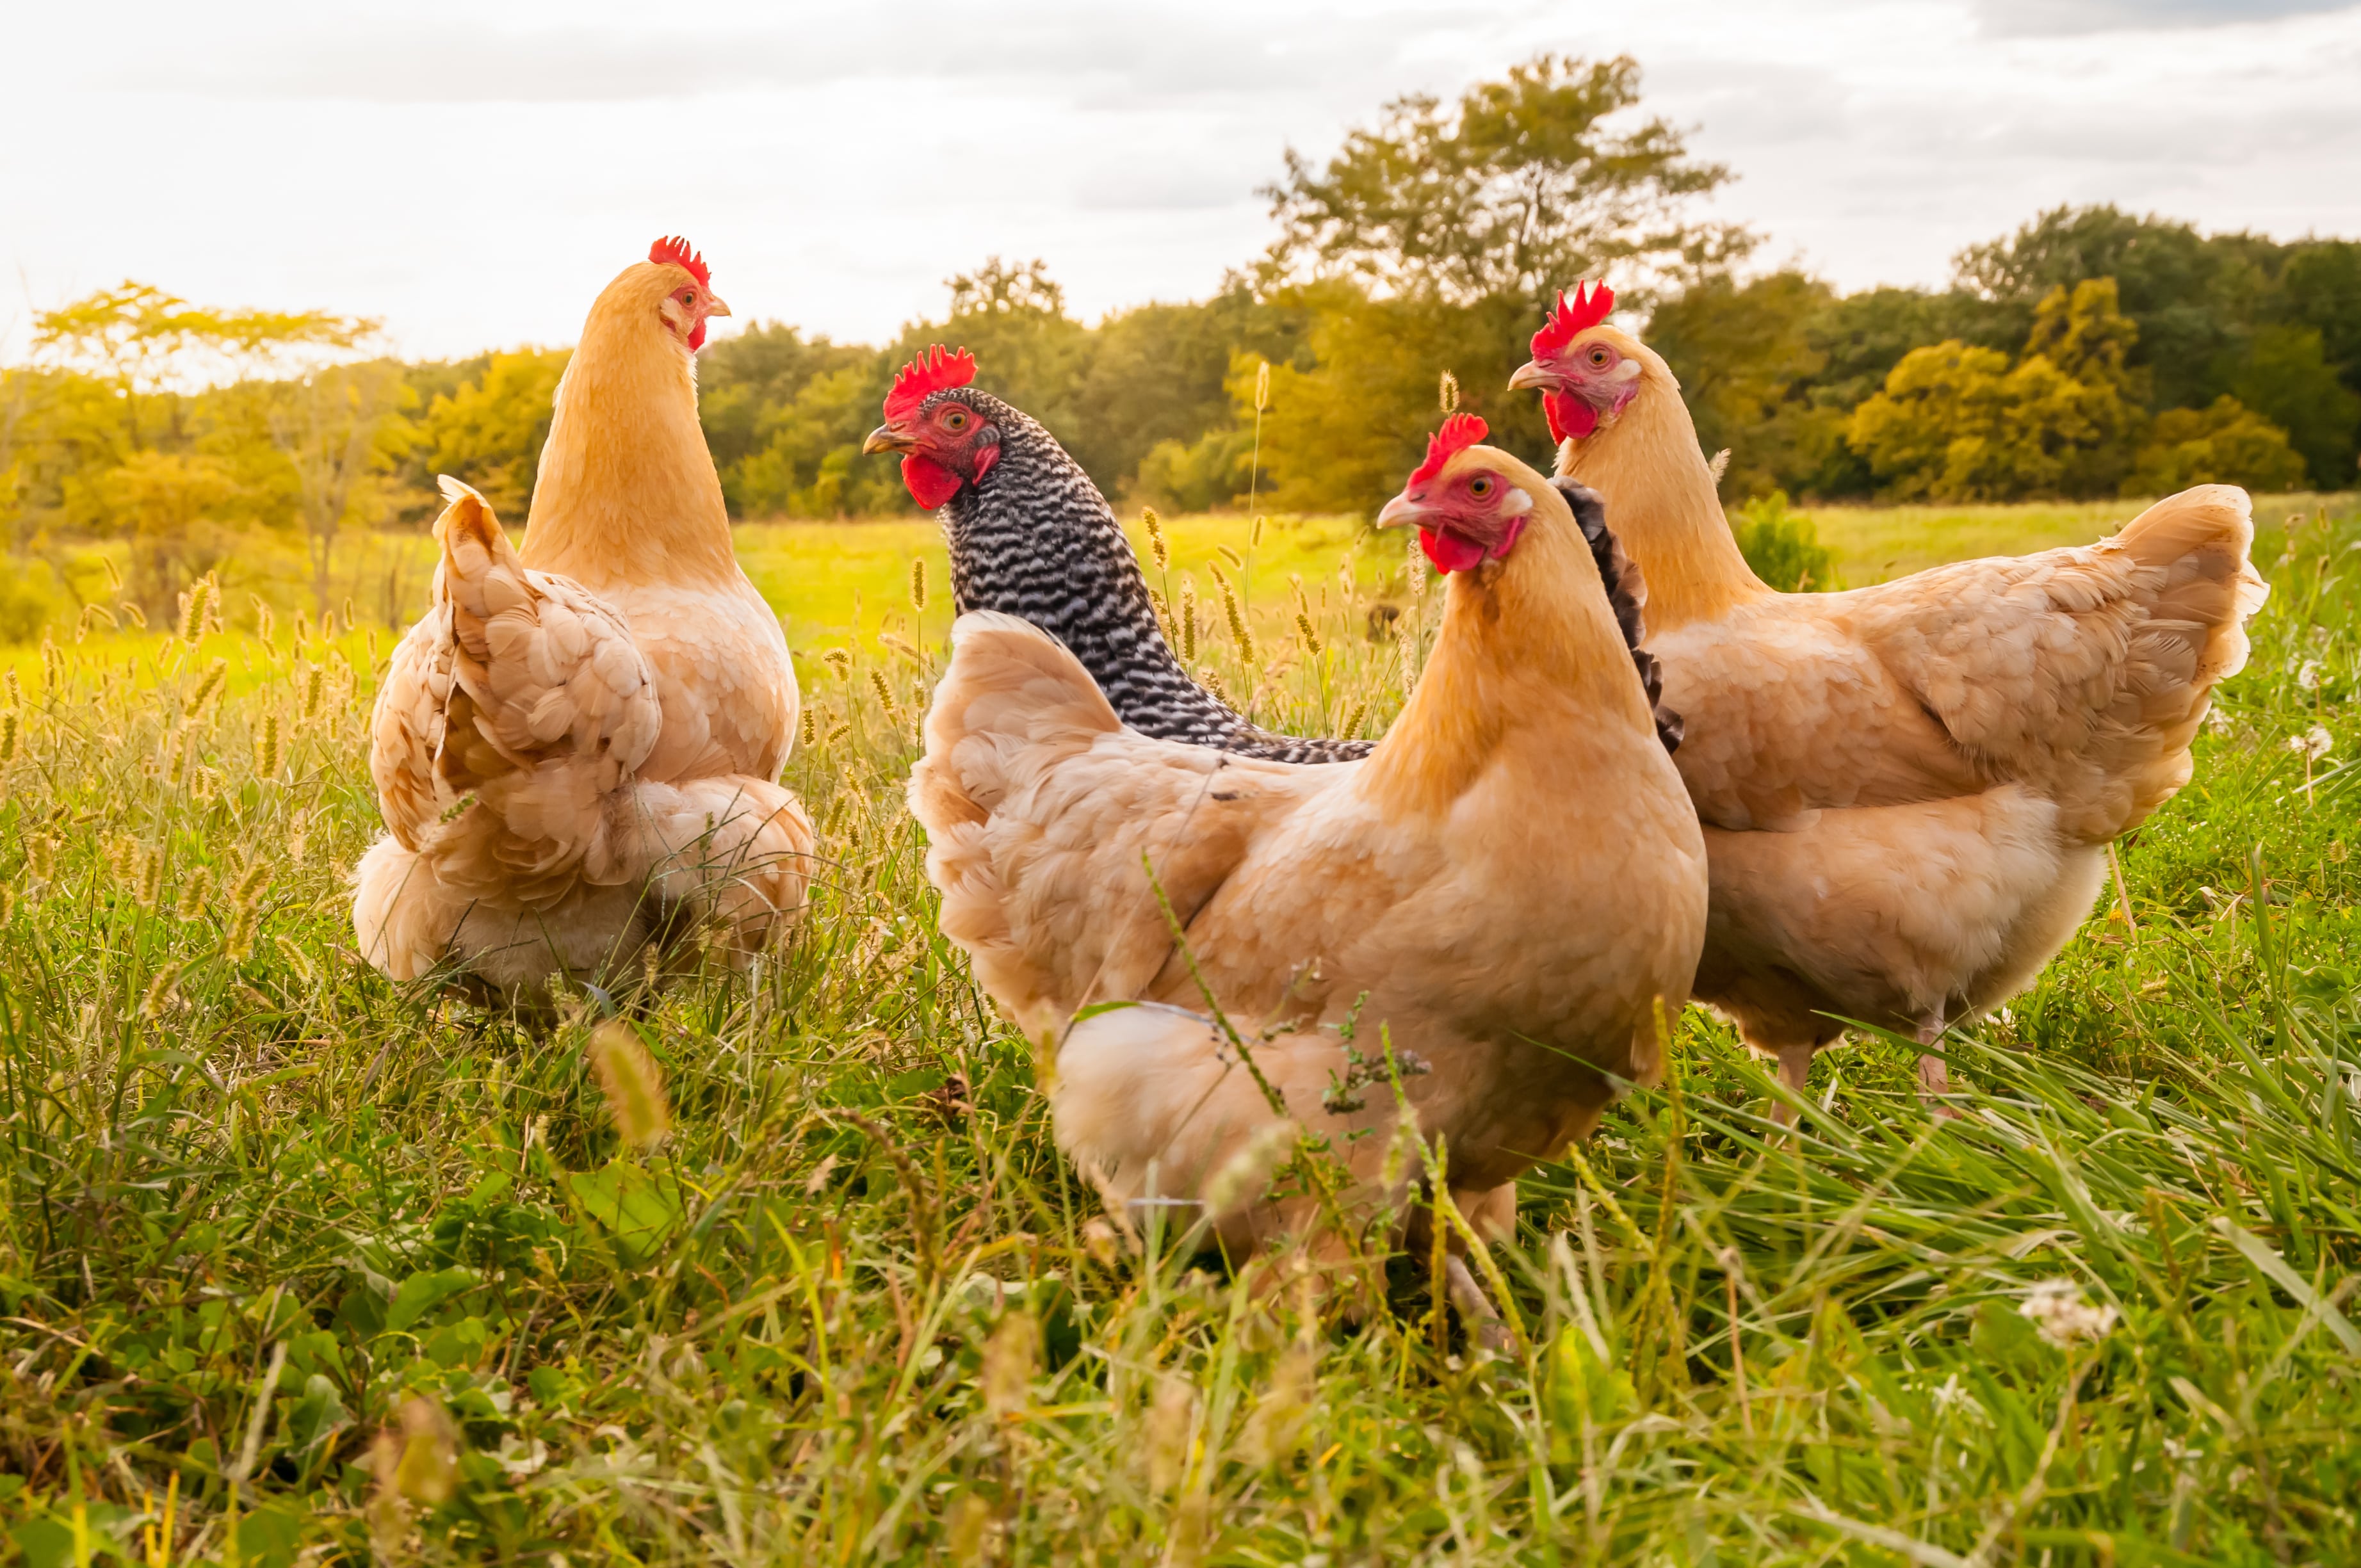 Grippe aviaire - la surveillance post-vaccinale est essentielle pour assurer la mobilité des oiseaux en toute sécurité